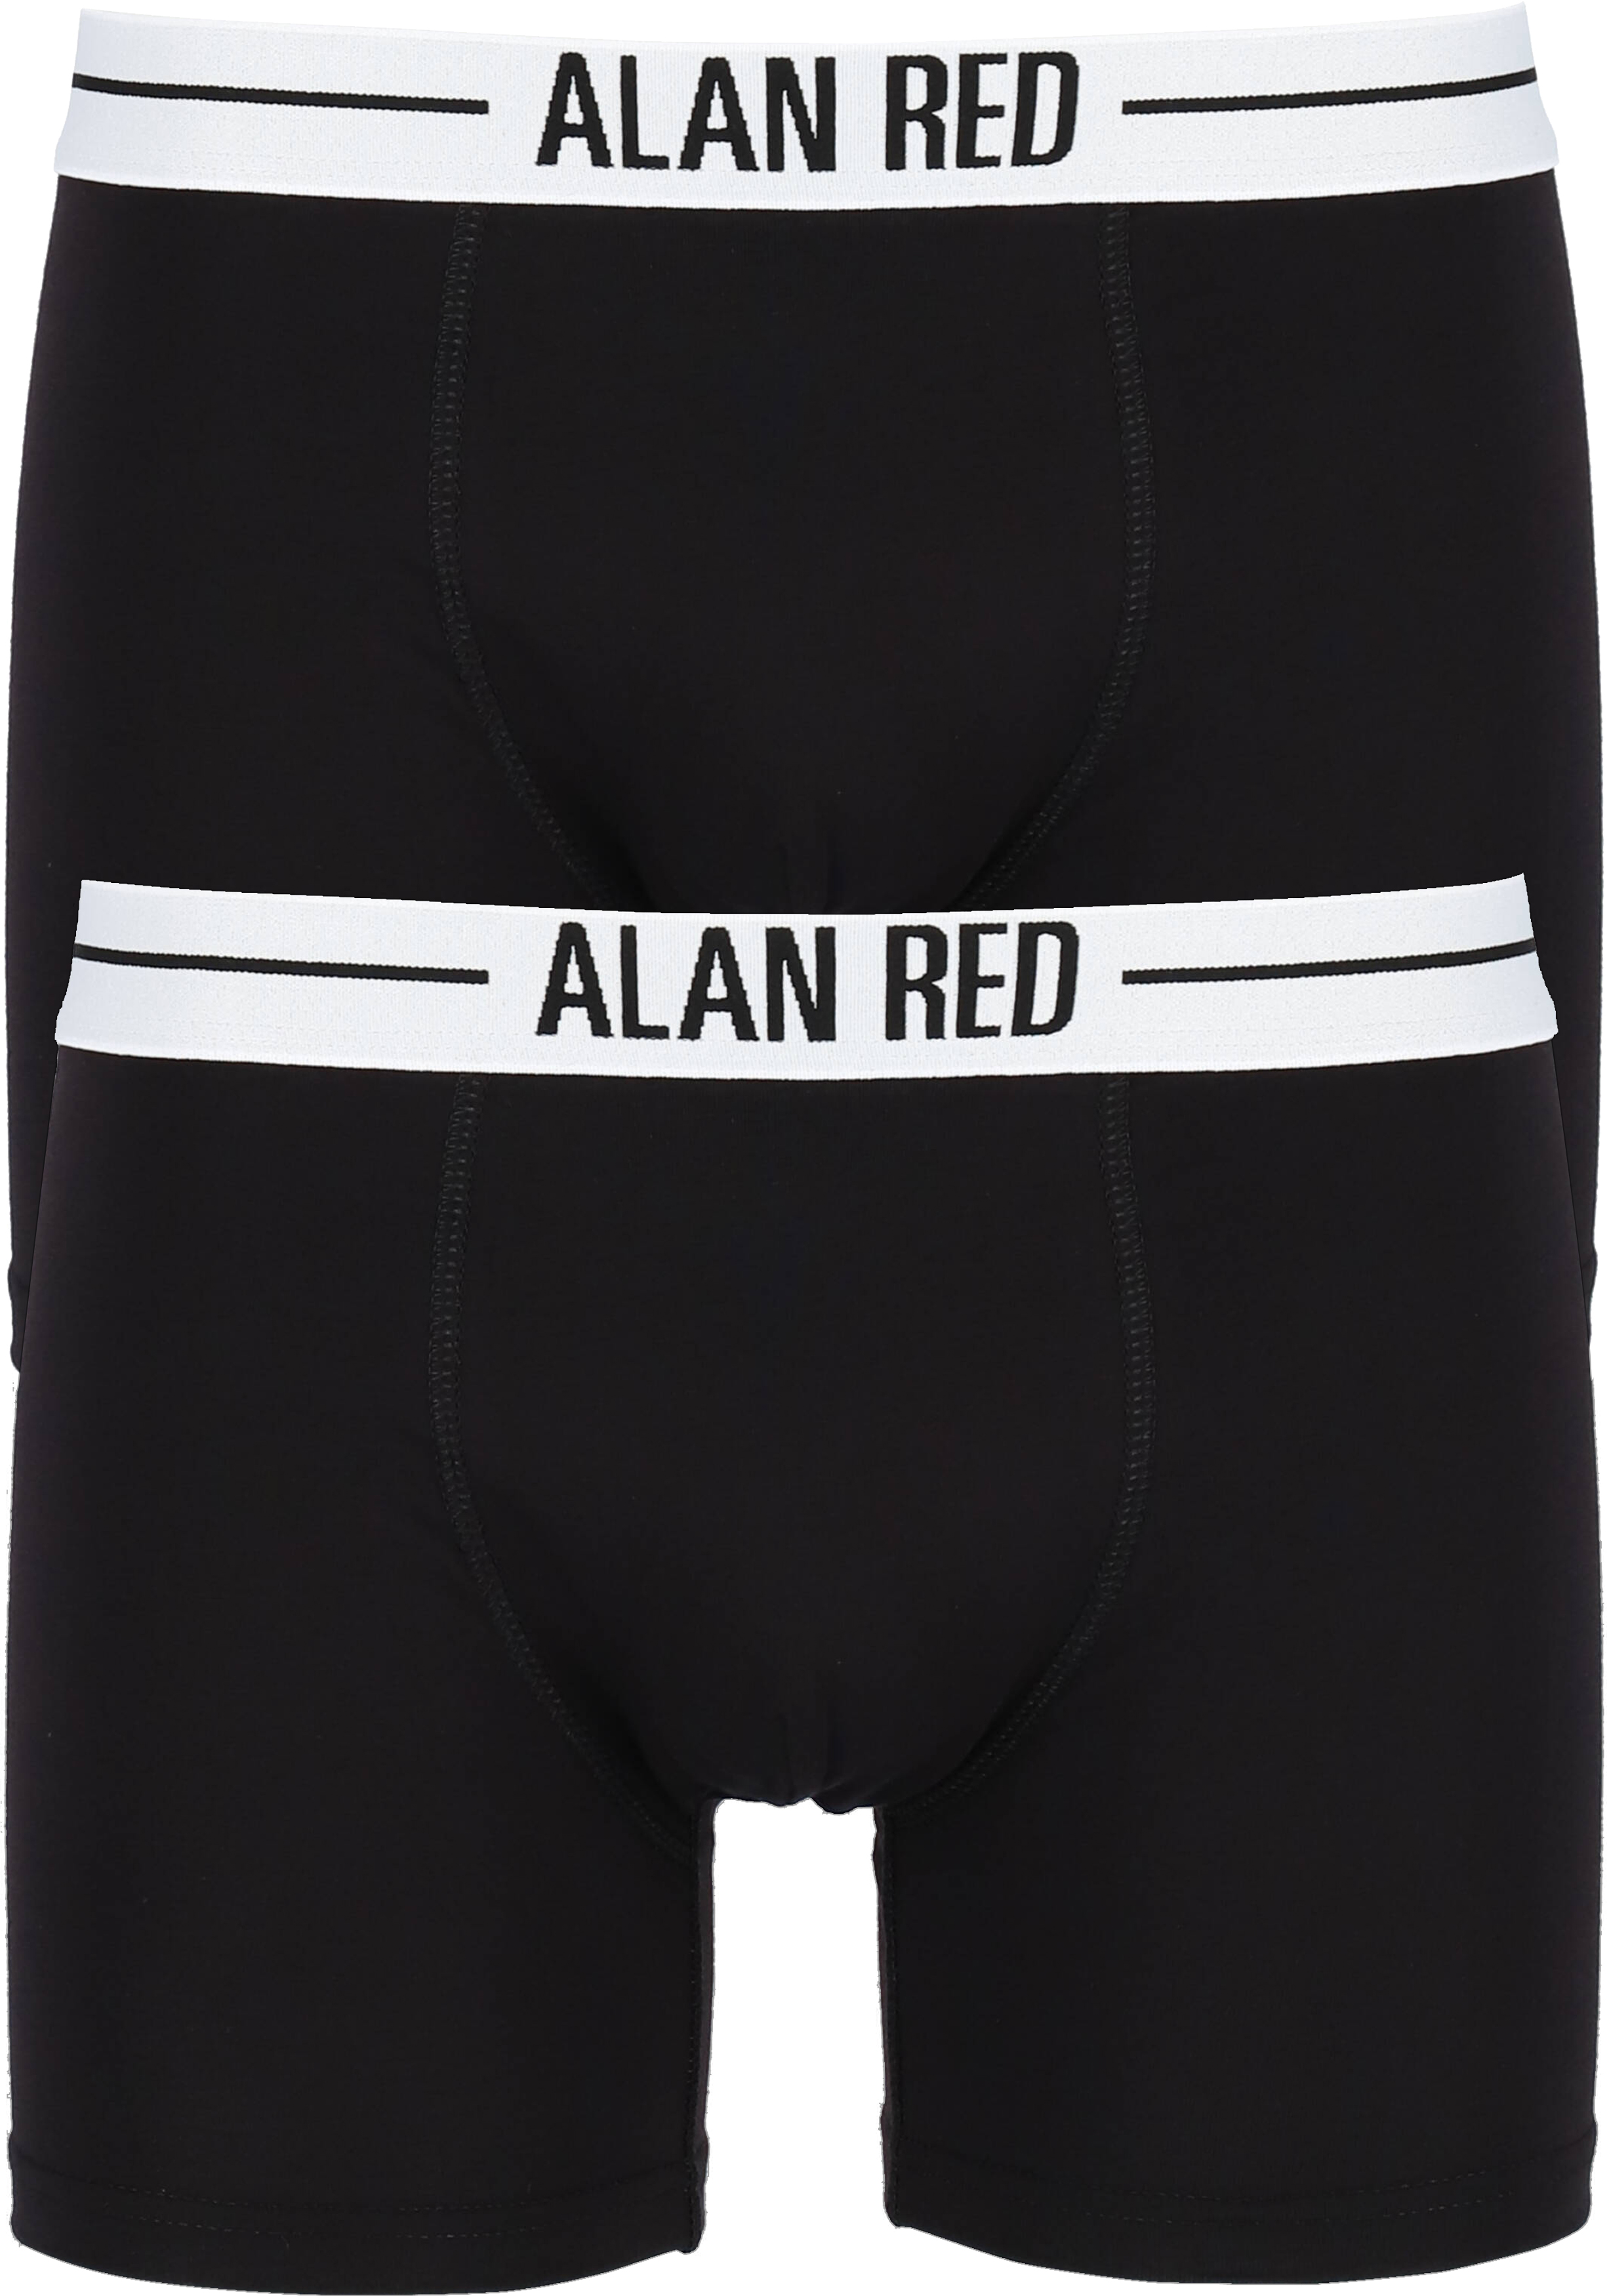 ALAN RED boxershorts (2-pack), zwart